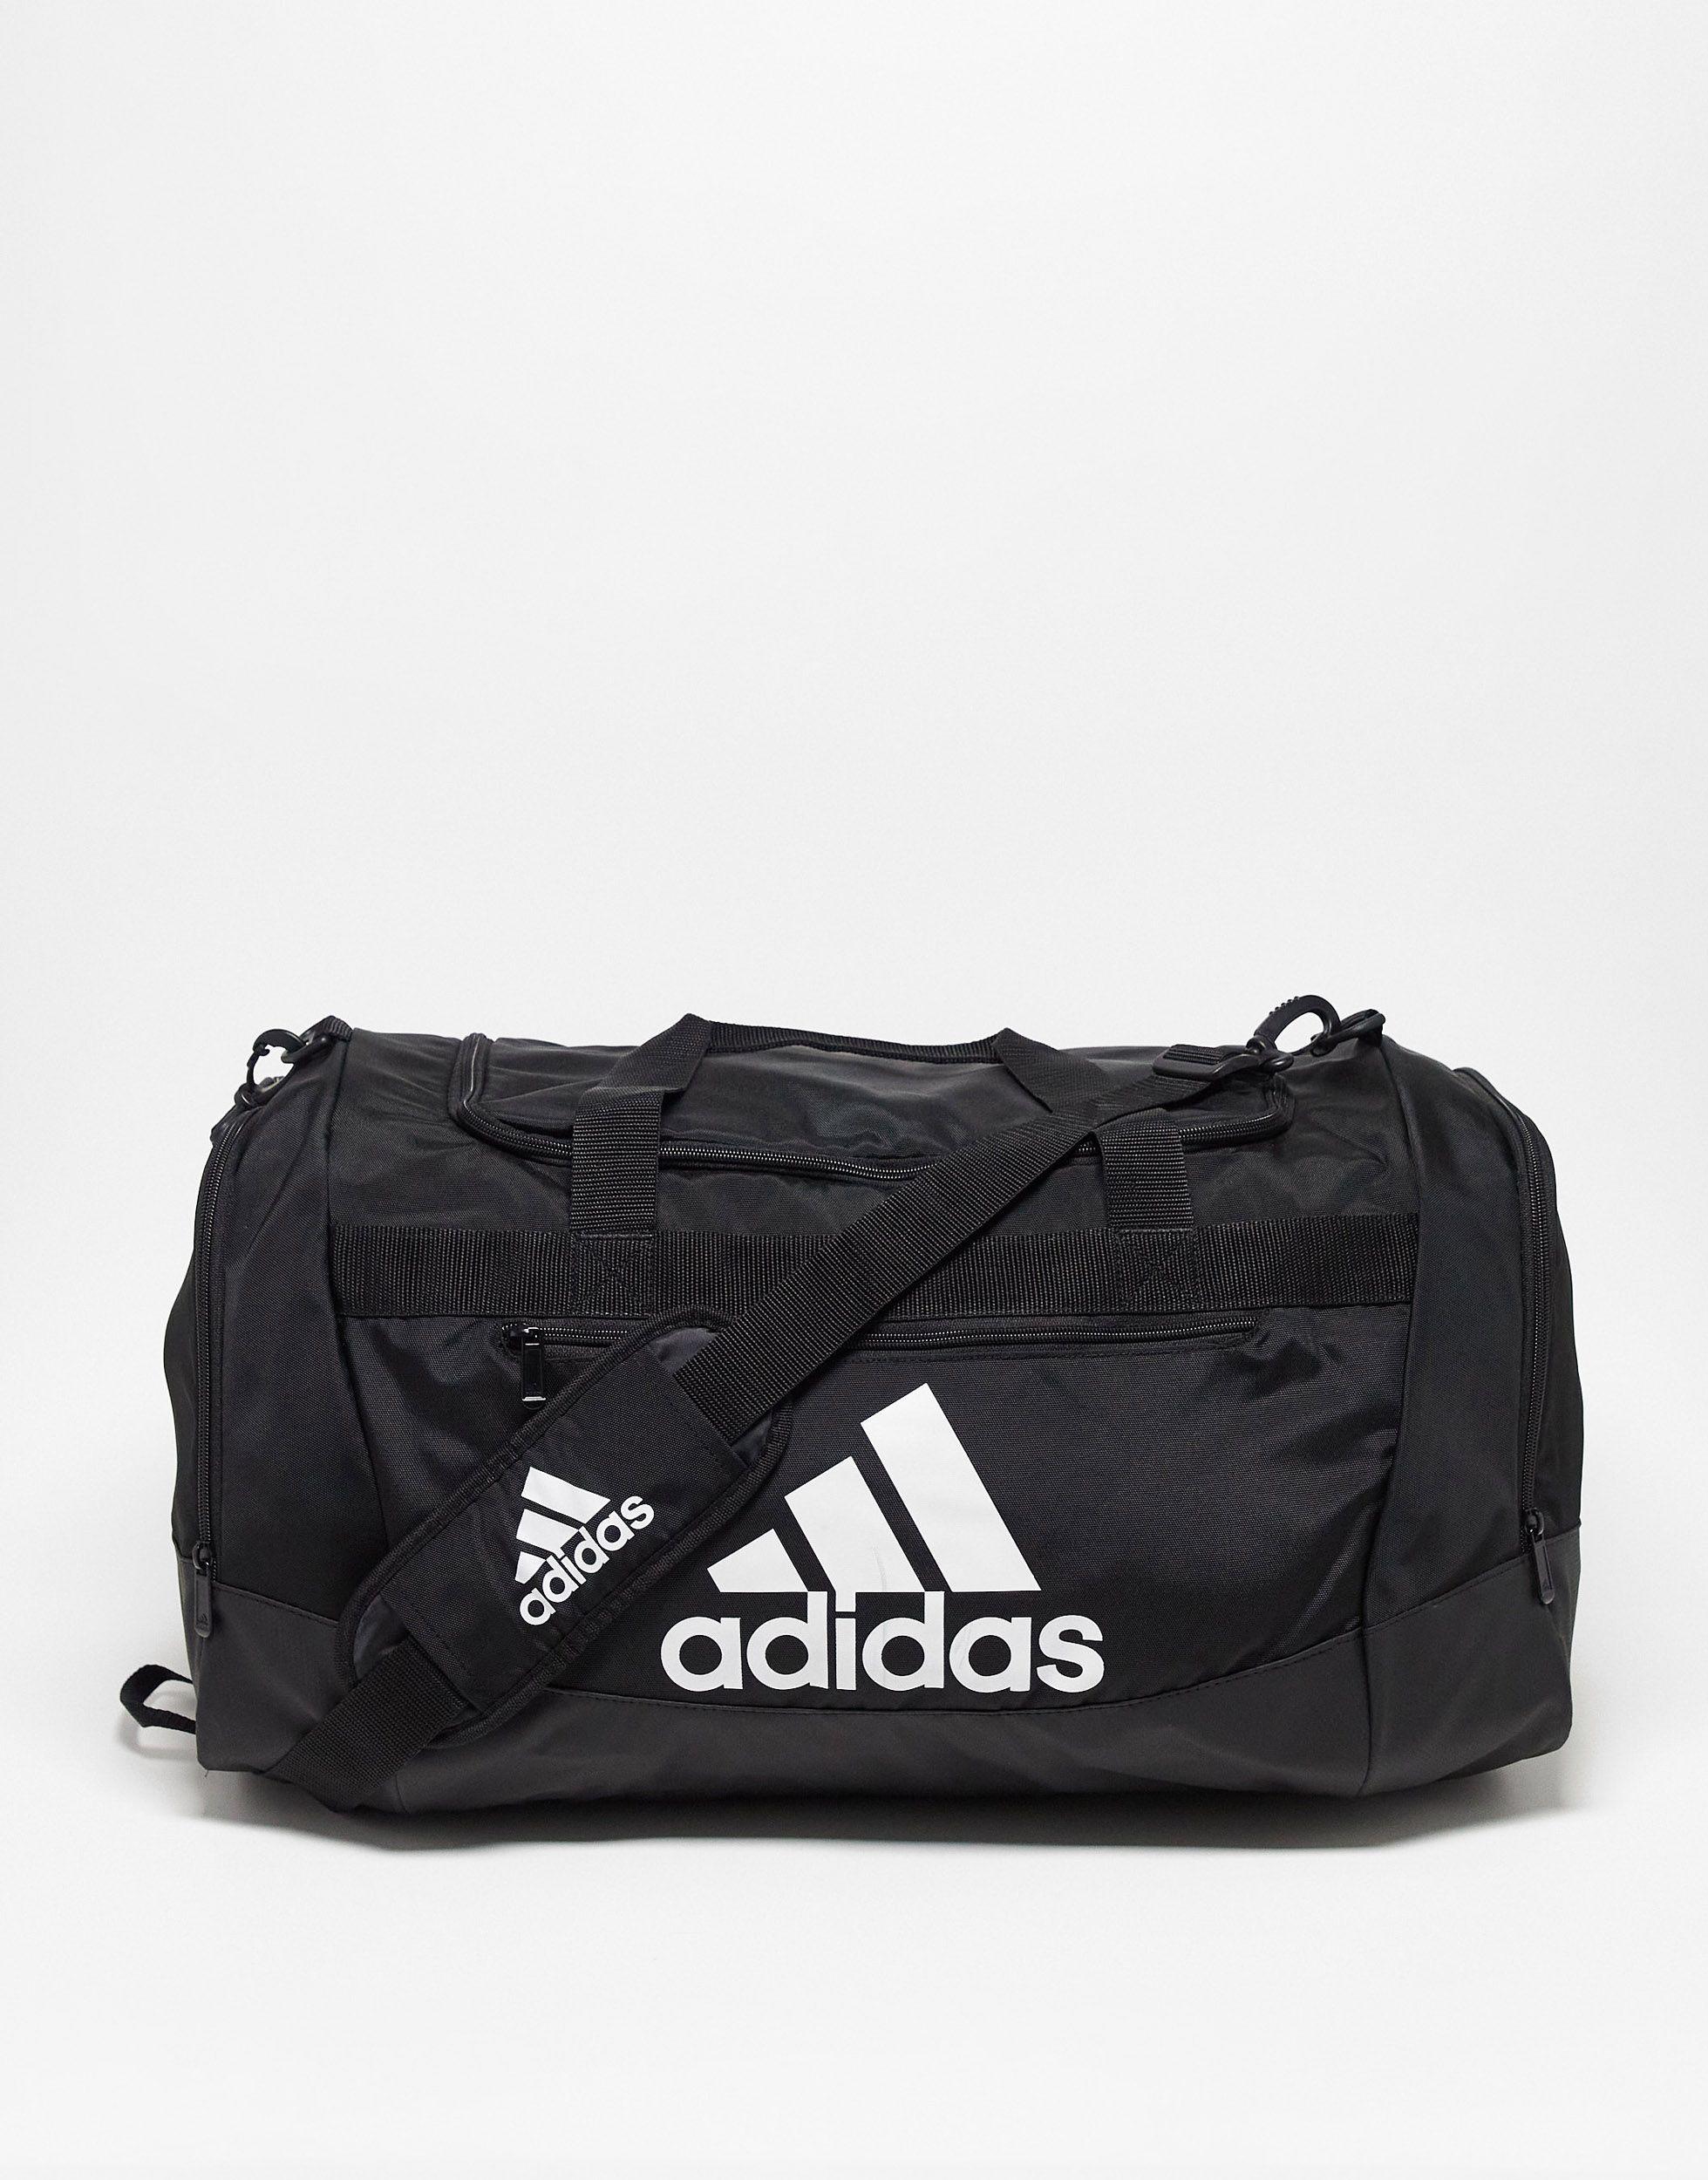 adidas Originals Adidas Training Defender Medium Duffle Bag in Black | Lyst